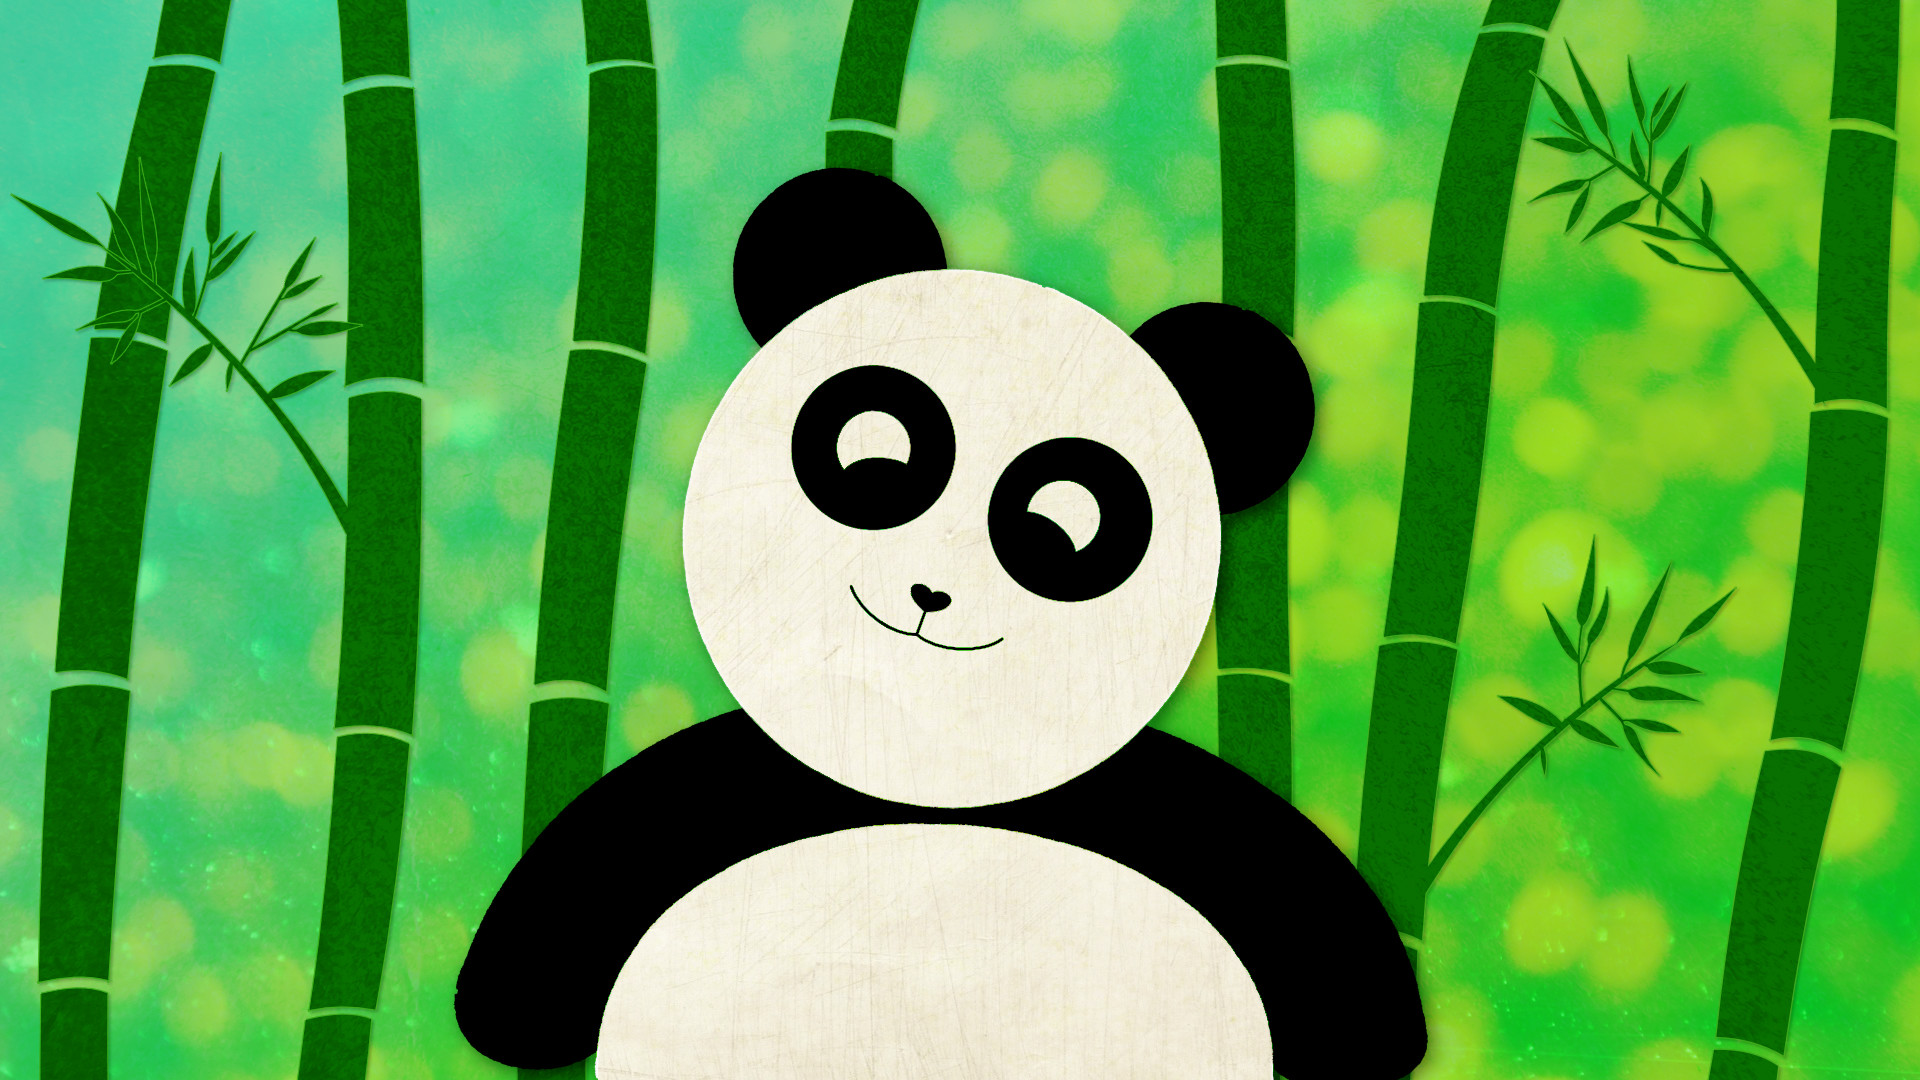 Cute Panda Wallpaper I made